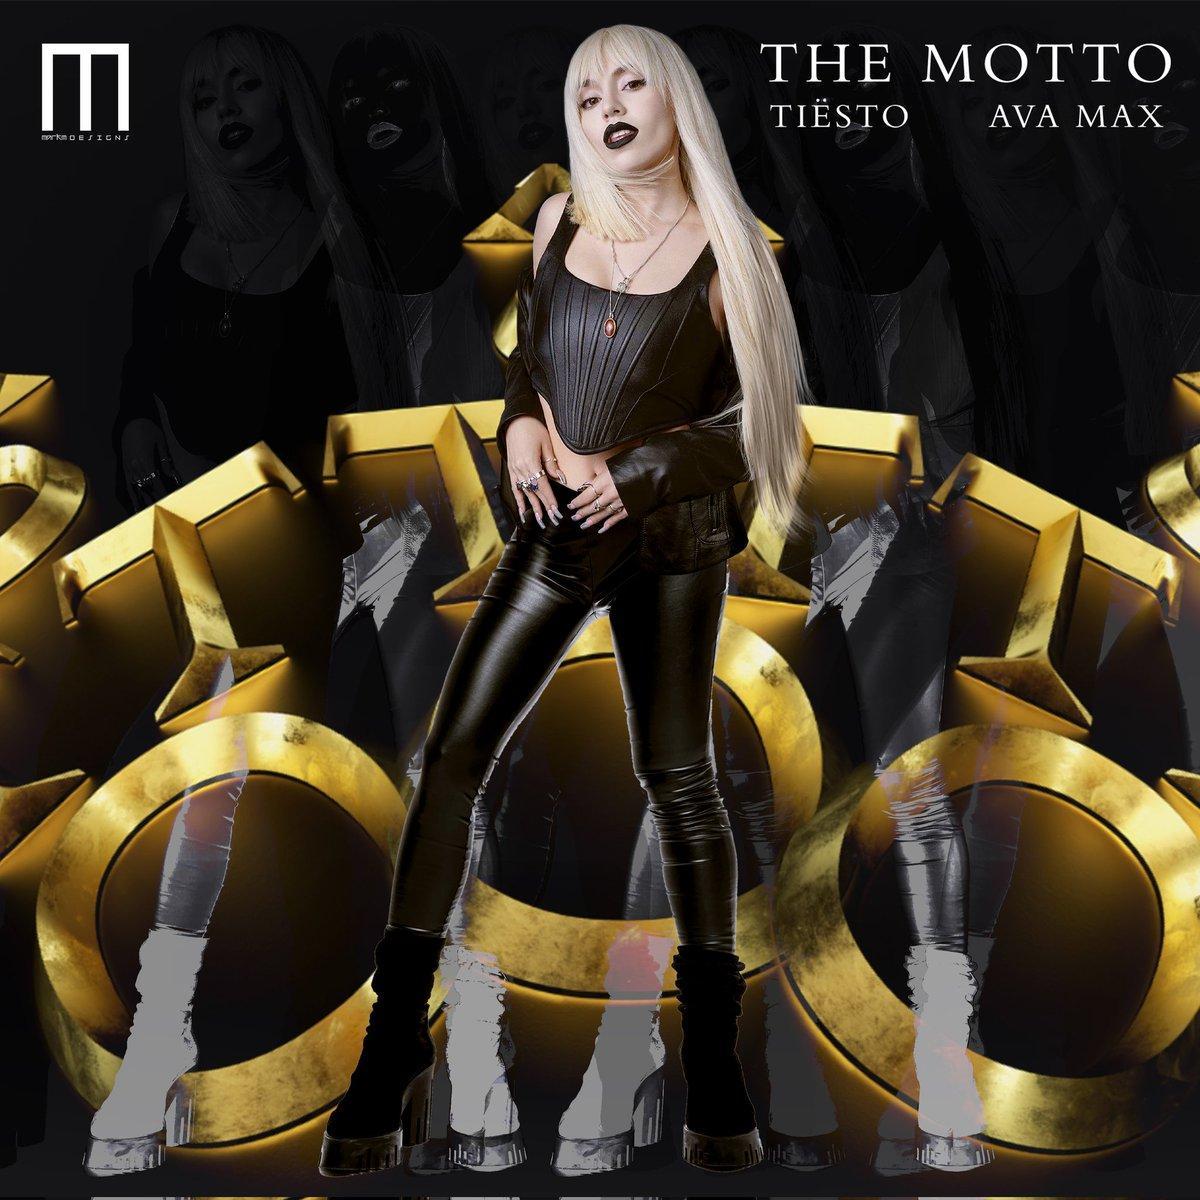 Tiësto & Ava Max: The Motto (Music Video)